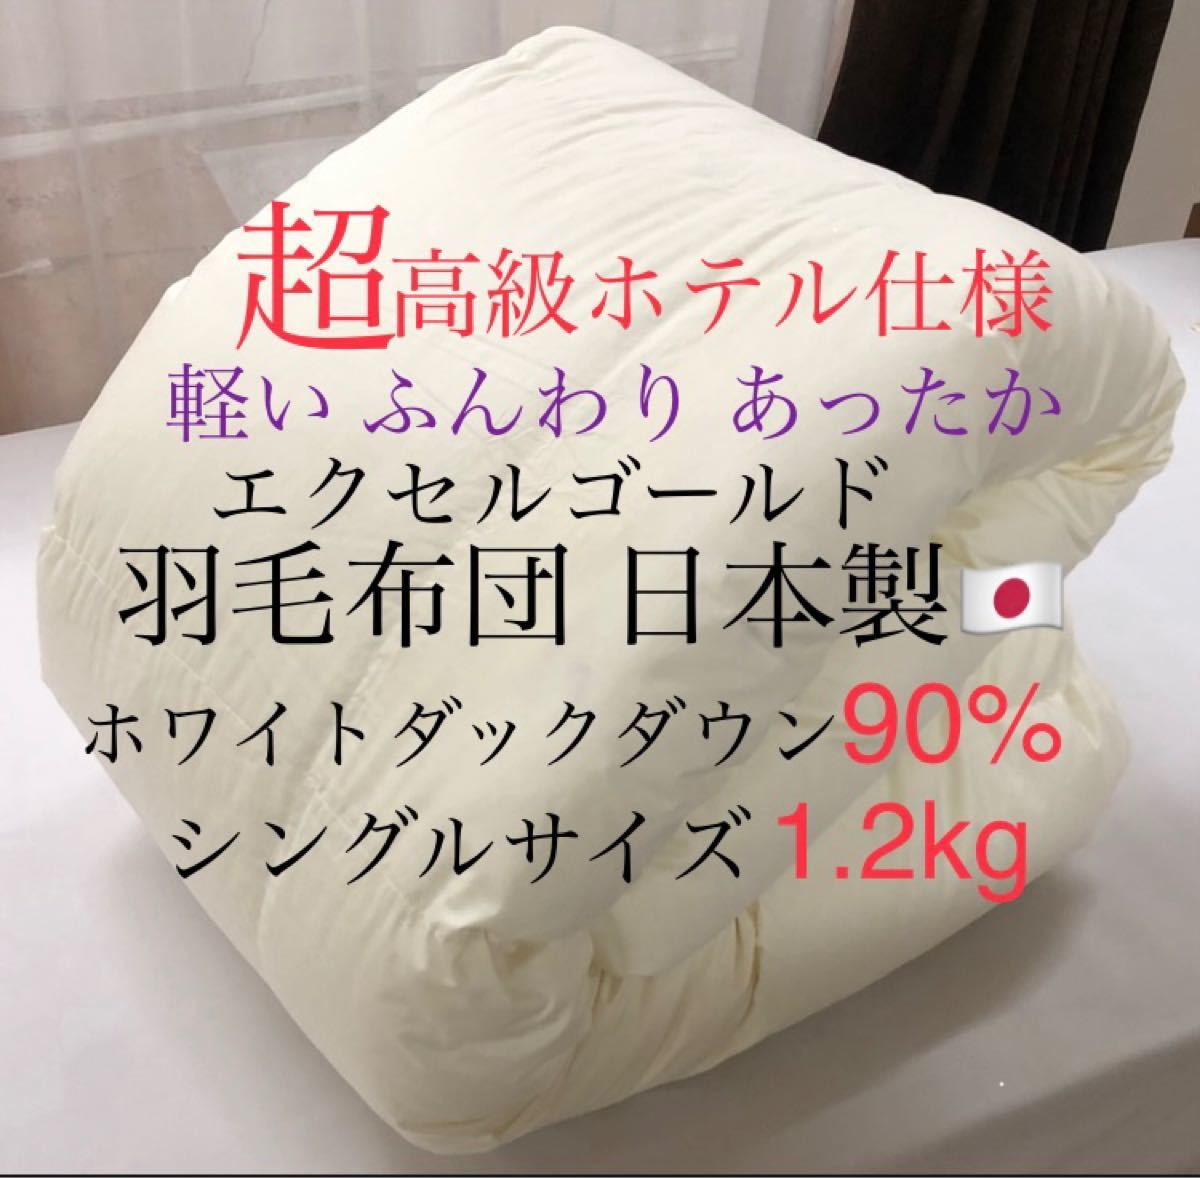 超高級ホテル仕様羽毛布団 ホワイトダックダウン90% 1.2kg ダウンパワー350dp エクセルゴールド シングルサイズ 日本製 